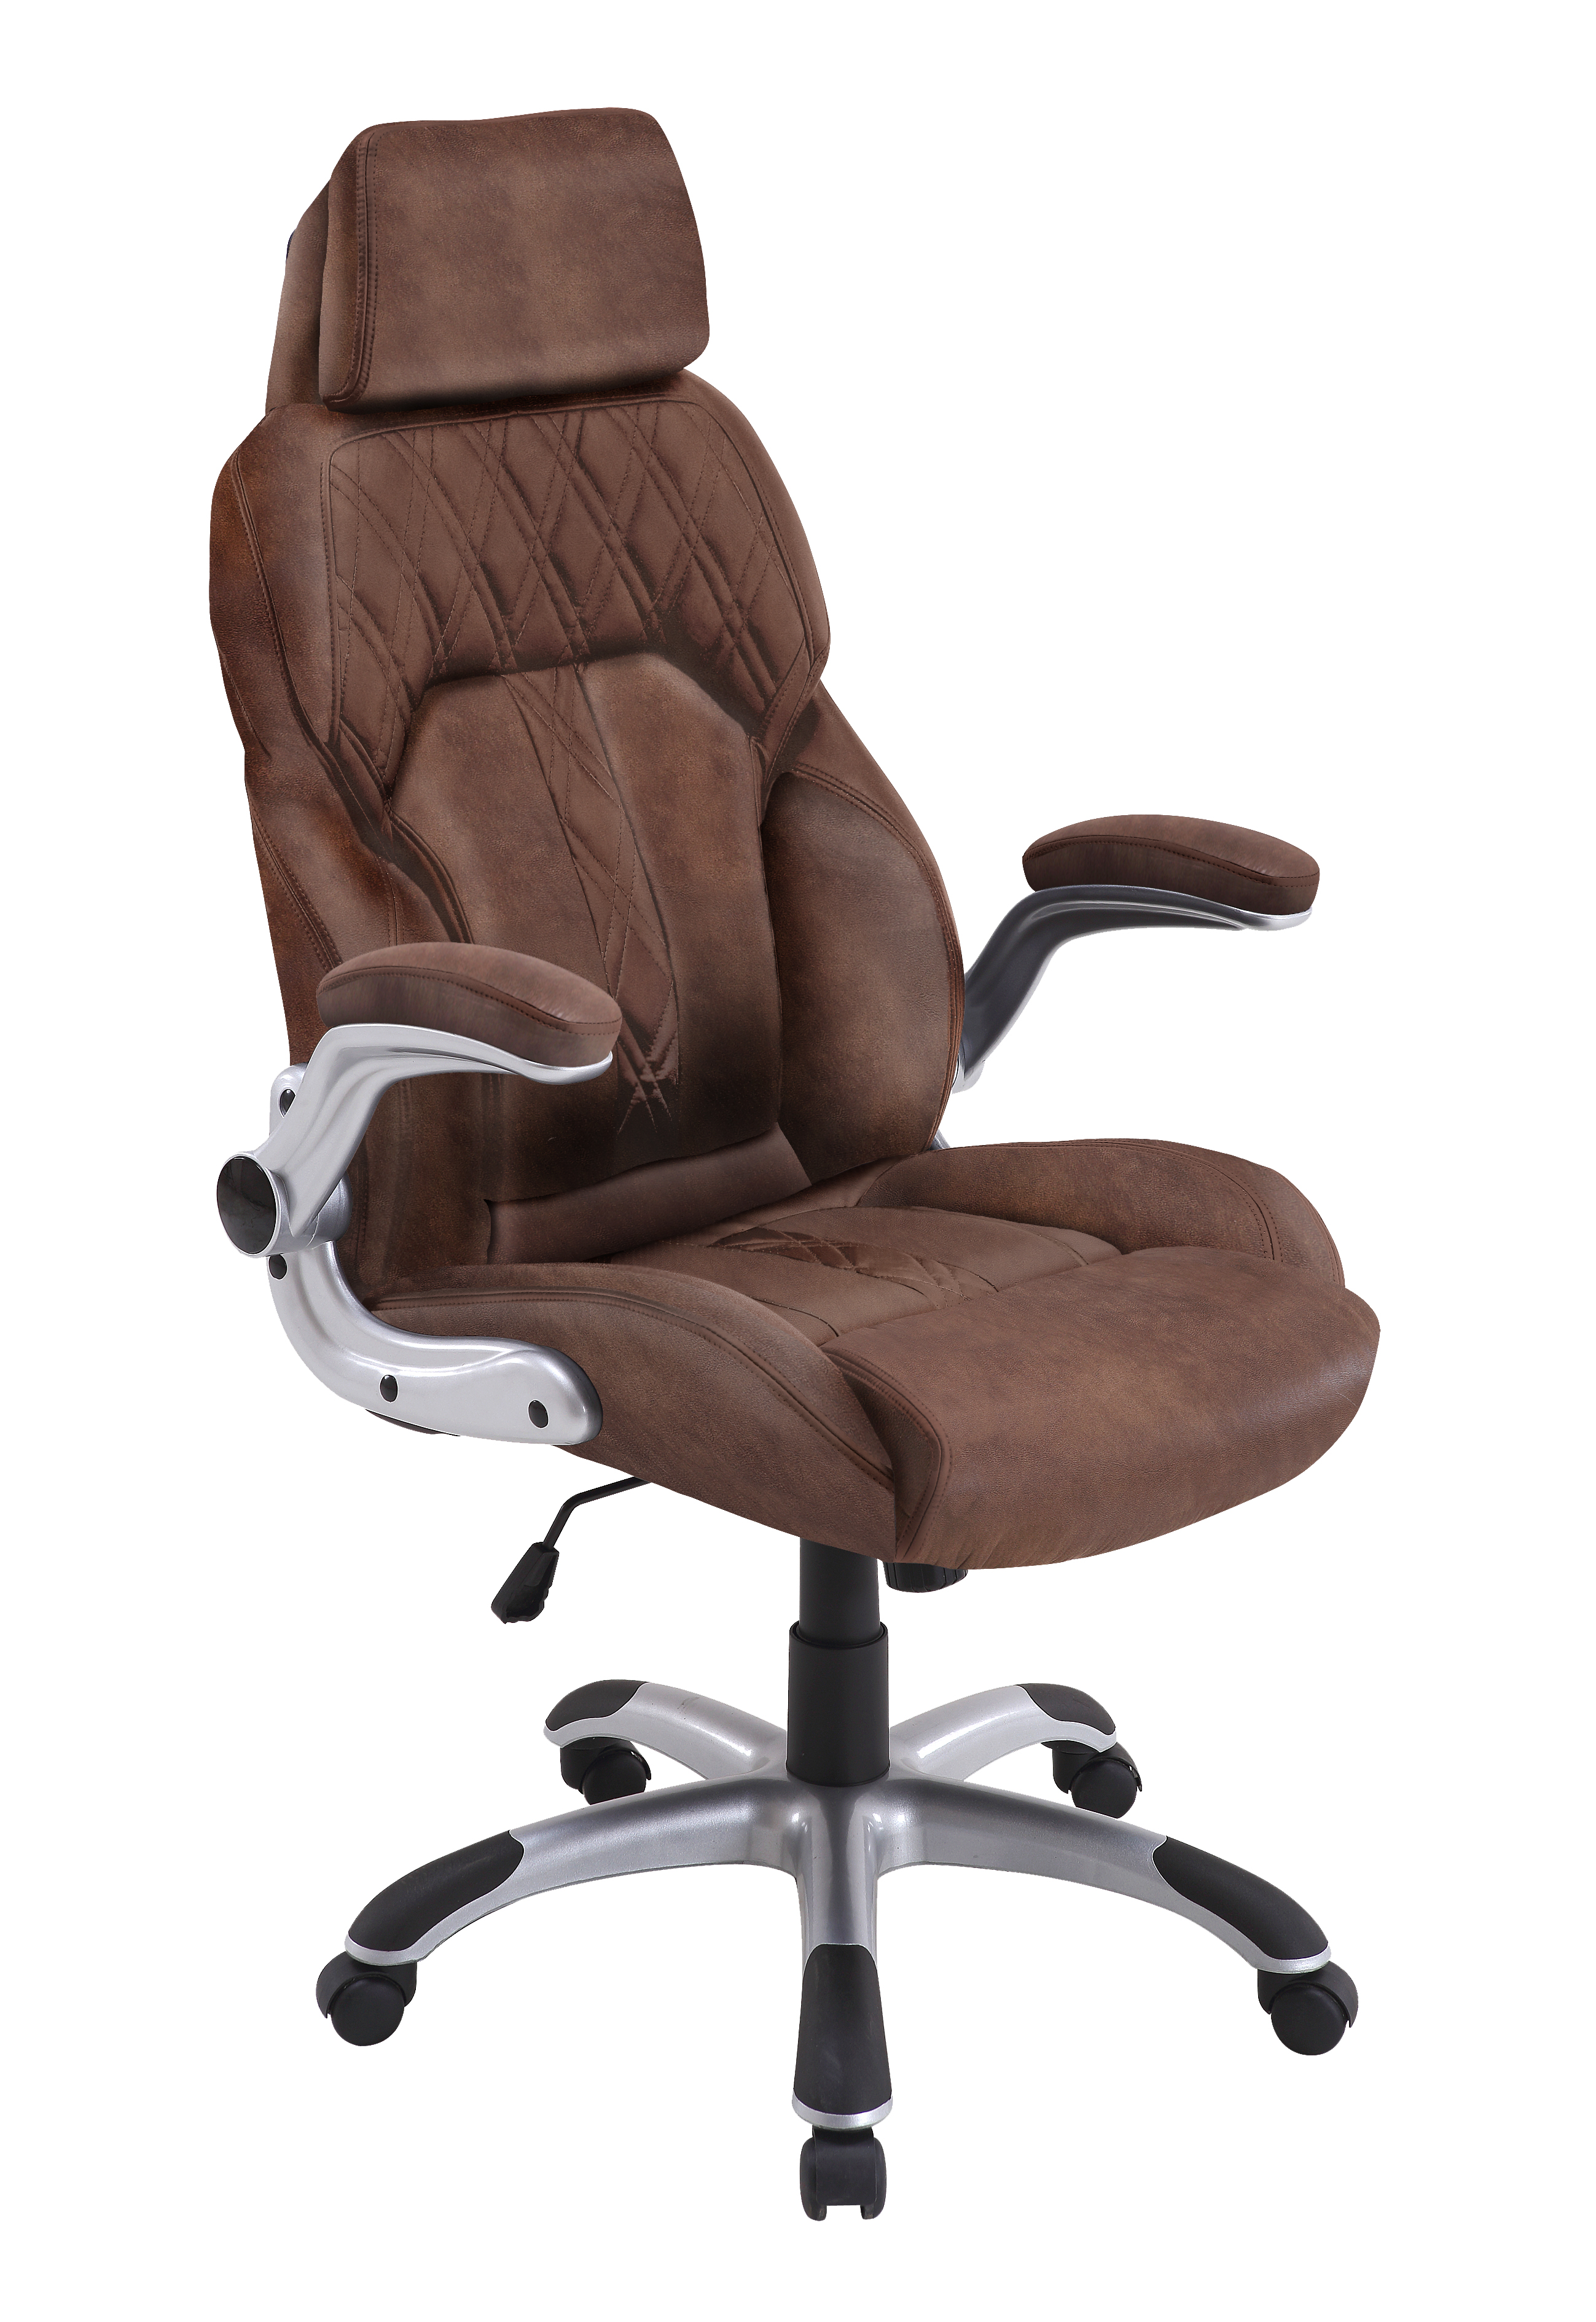 Luxus-Chefsessel Chefsessel, multifunktionale 3D-Armlehne, Verstellbarer,  anhebbarer, drehbarer Computersitz (braun)